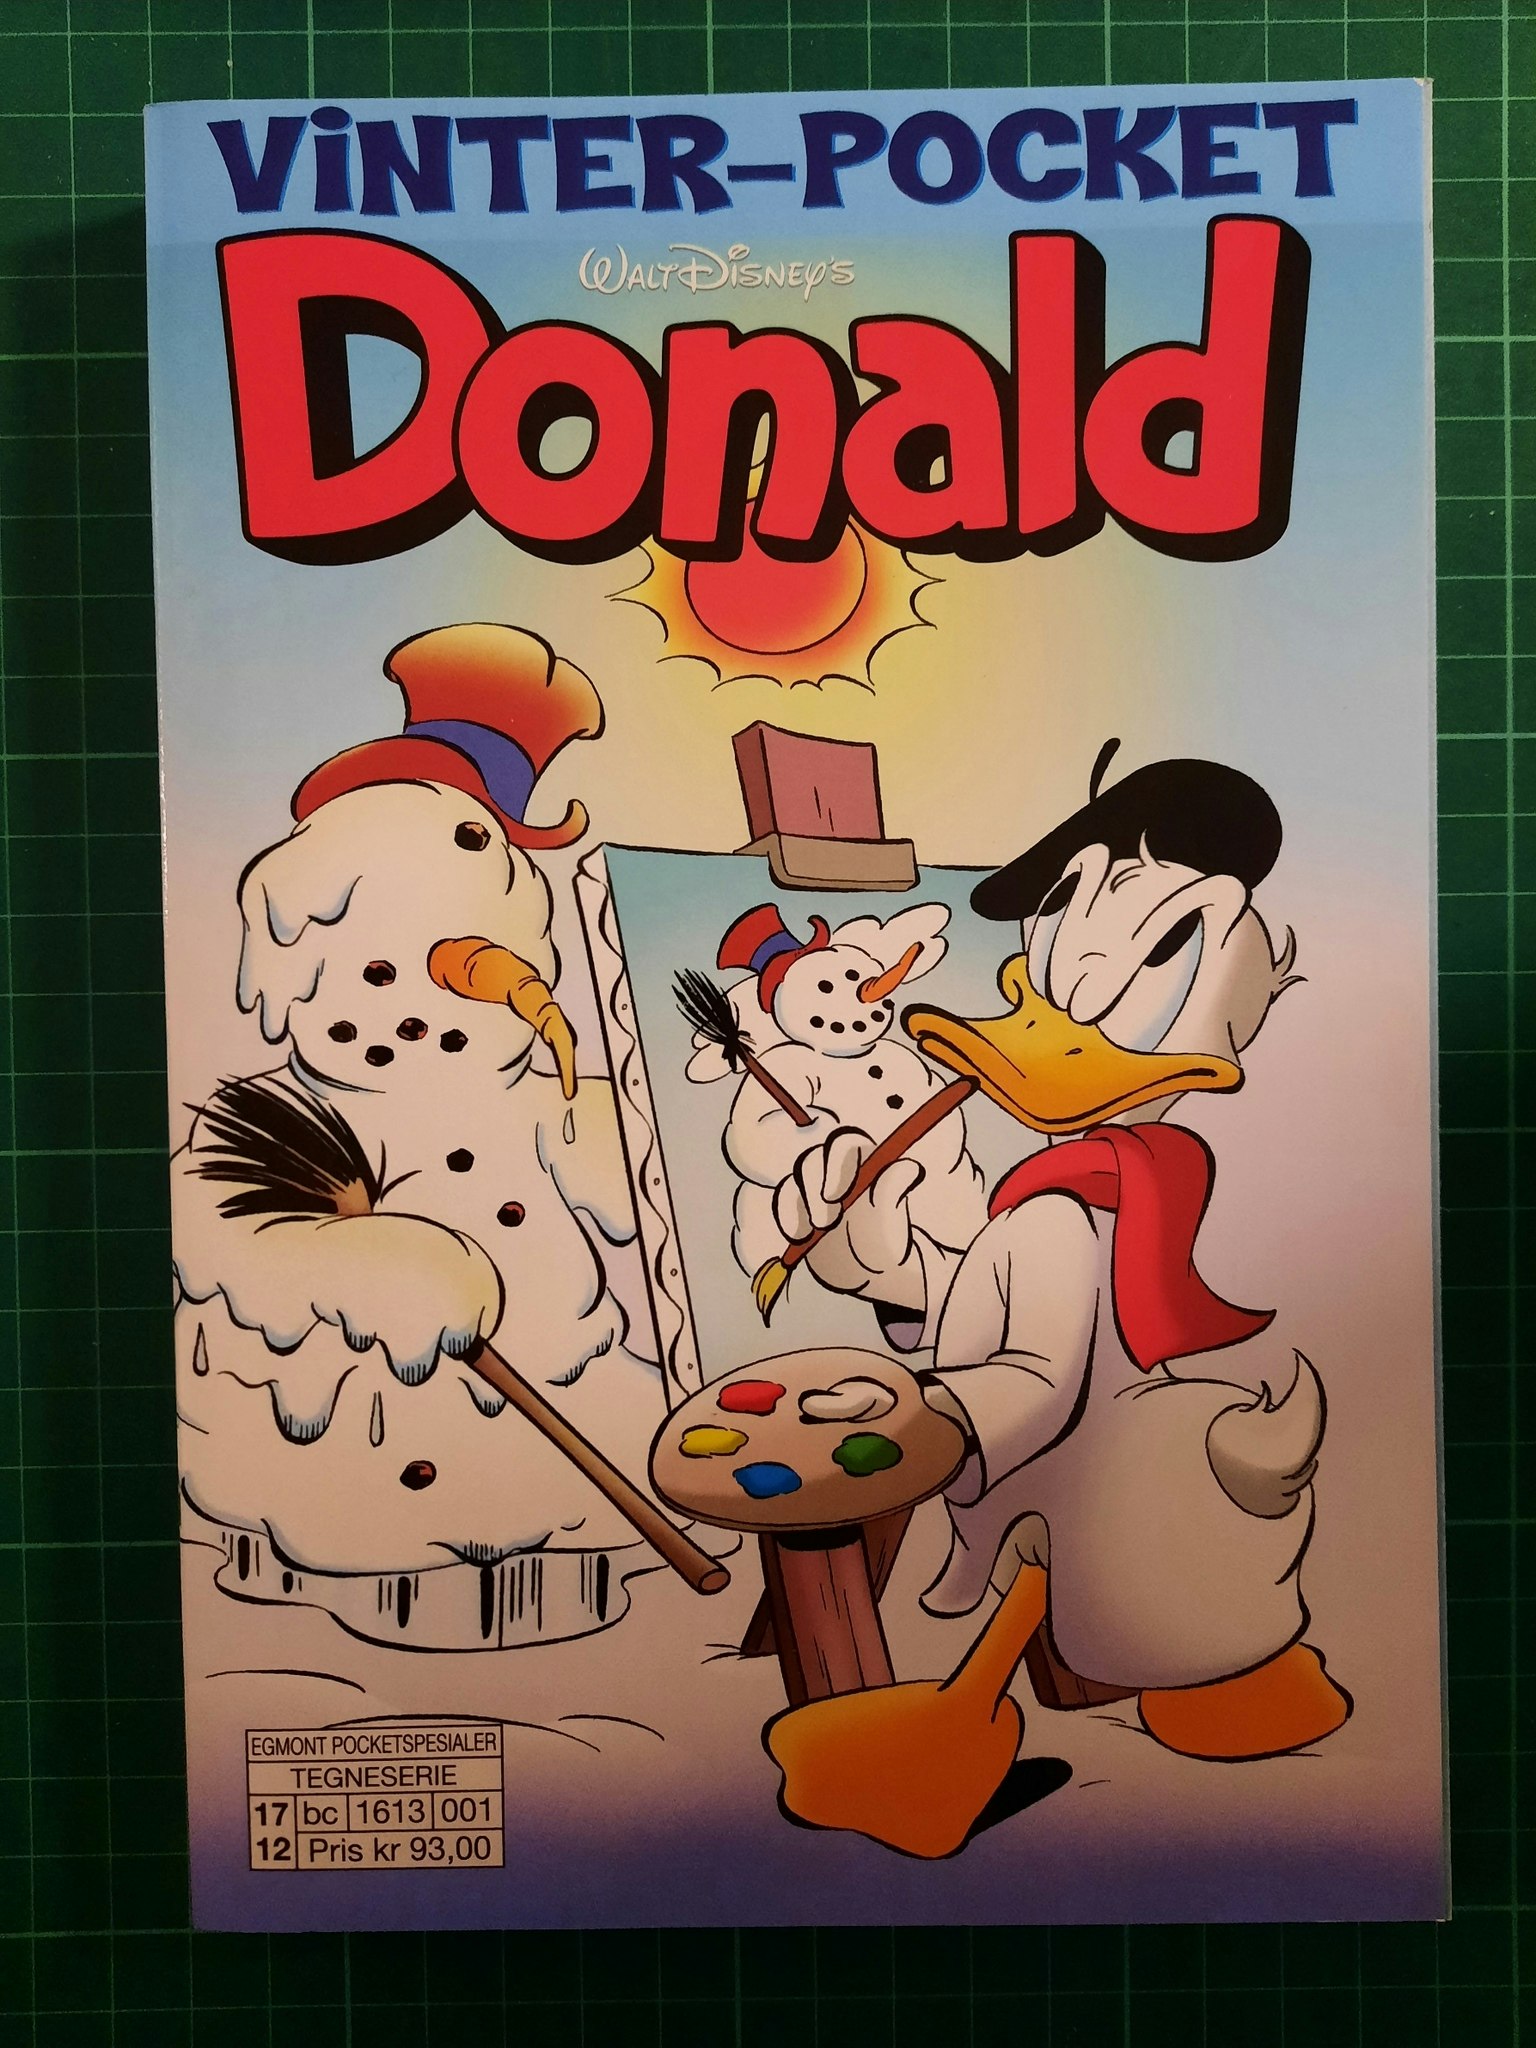 Vinter-pocket Donald 2017